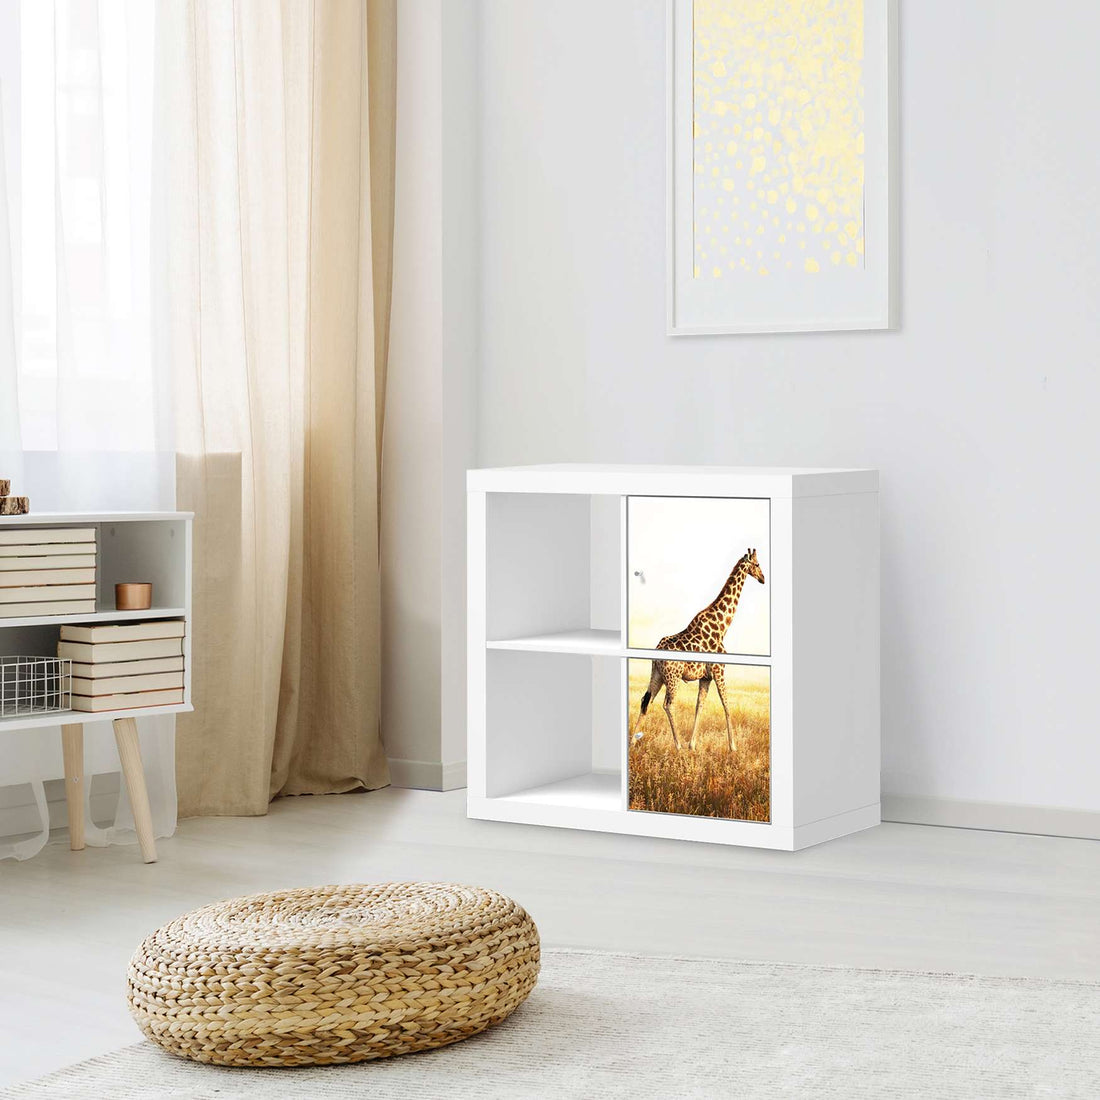 Klebefolie für Möbel Savanna Giraffe - IKEA Expedit Regal 2 Türen Hoch - Wohnzimmer